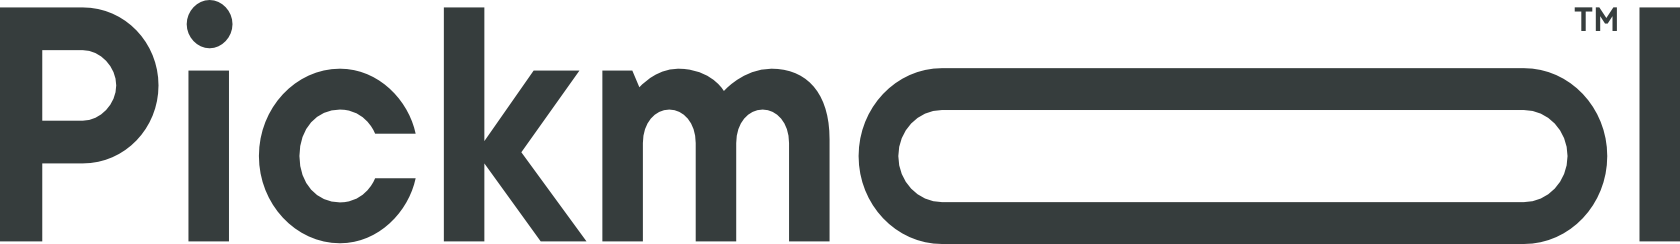 Pickmol logo